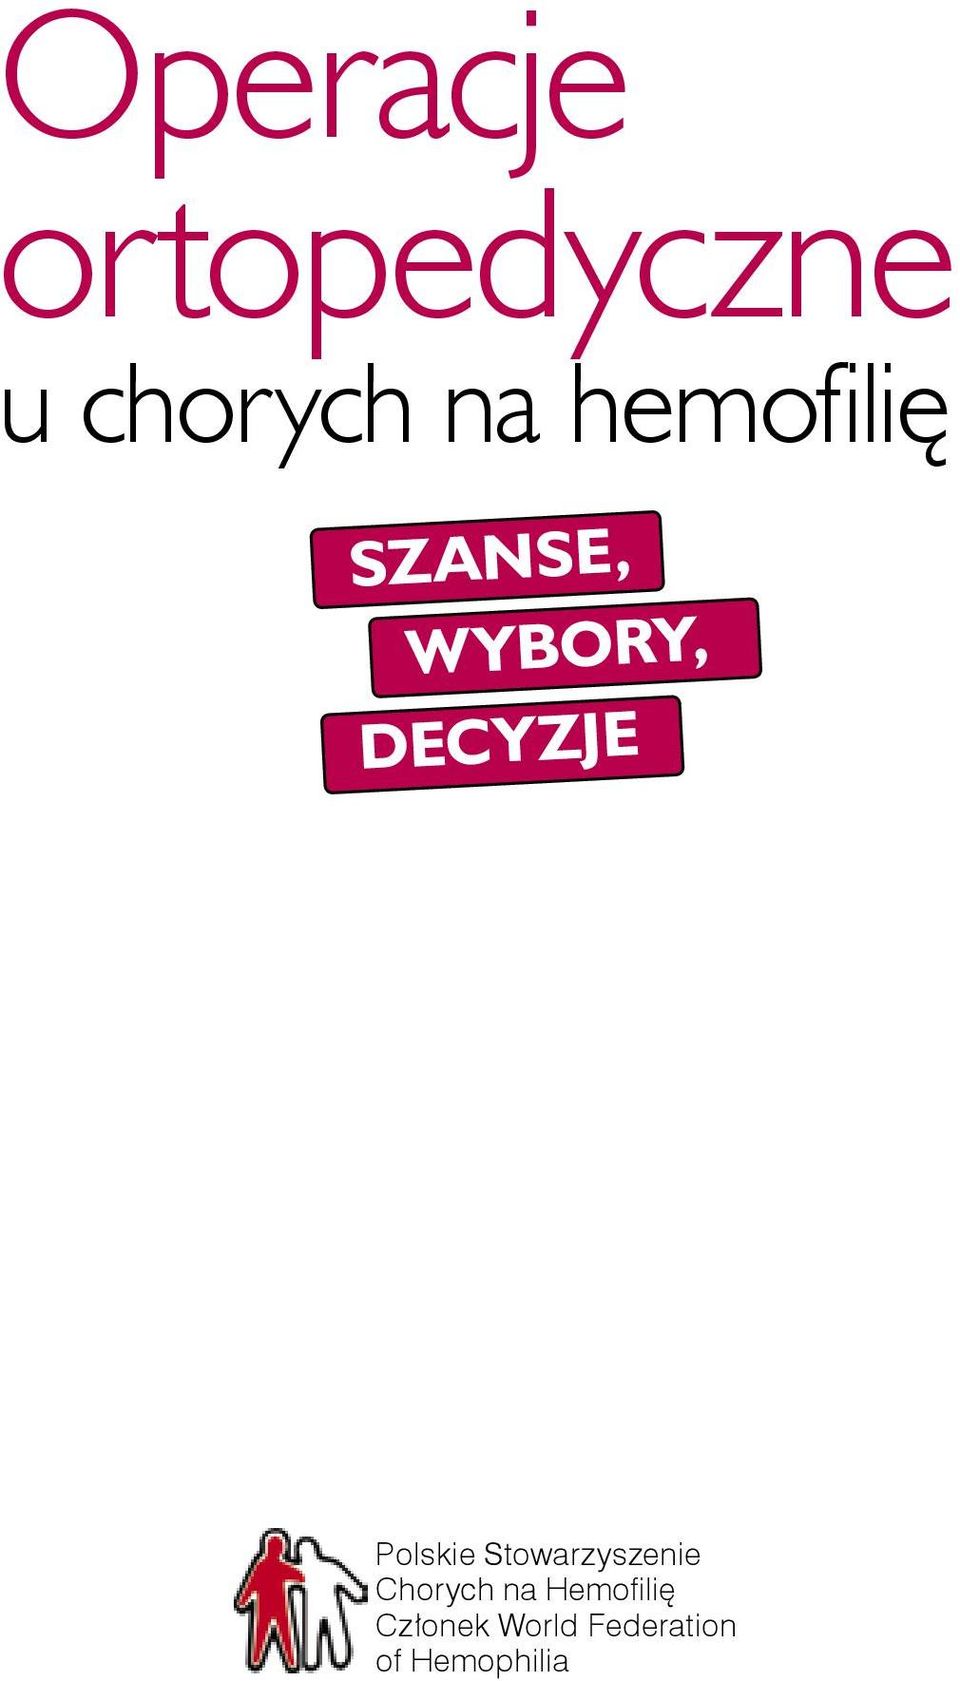 Polskie Stowarzyszenie Chorych na